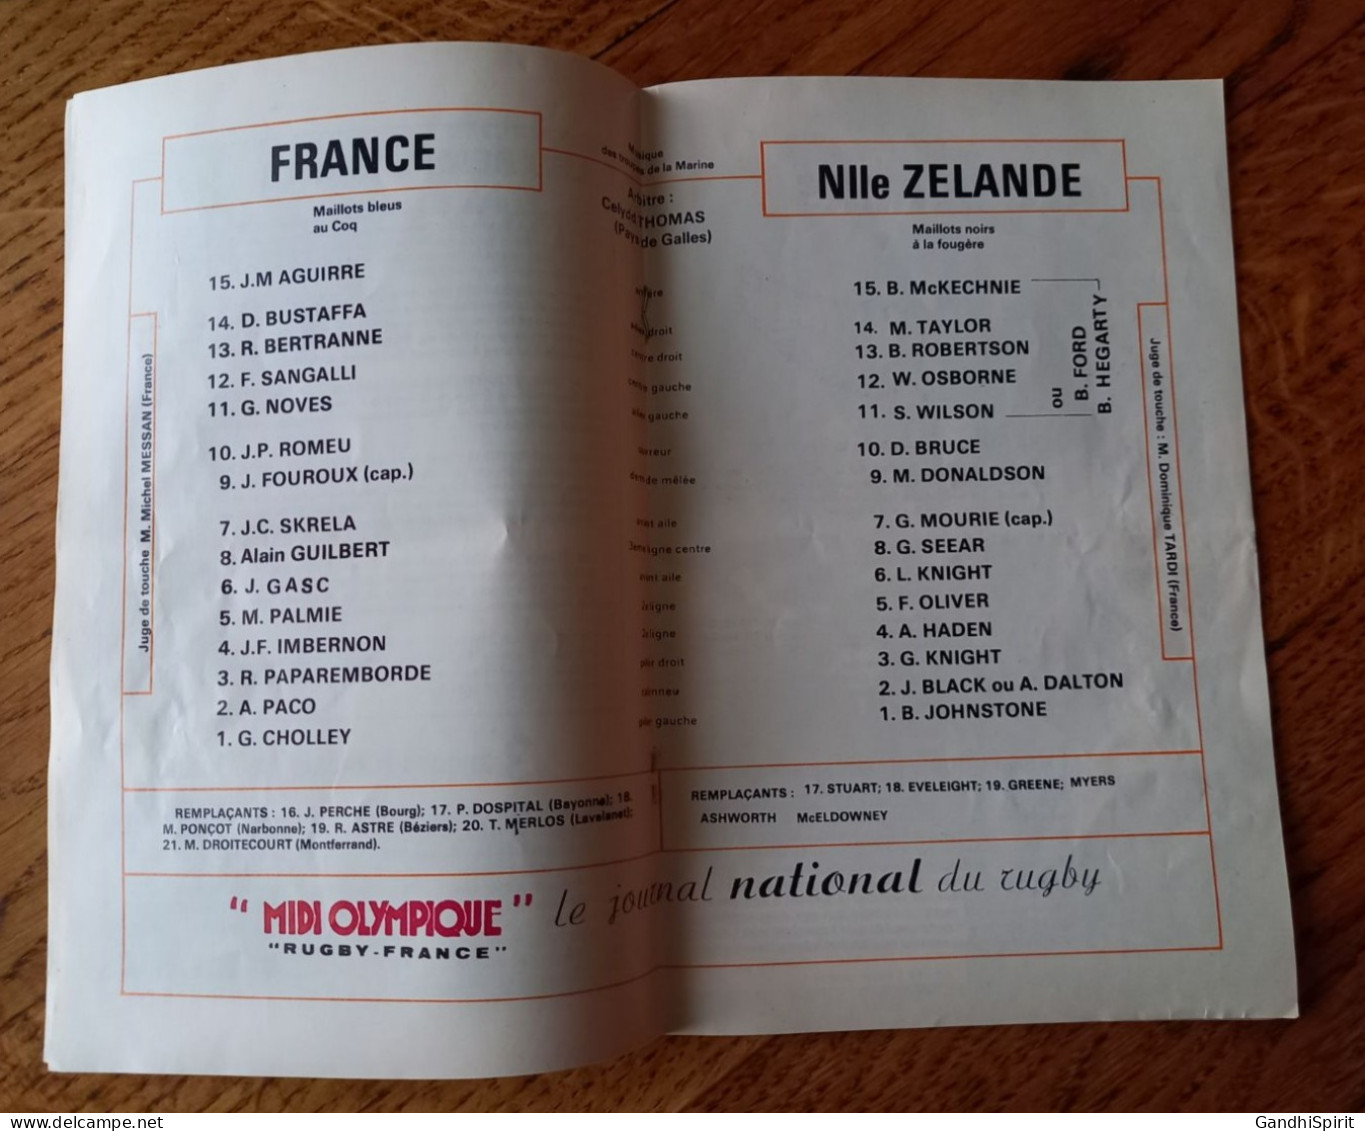 1977 Tournée All Blacks New Zealand en France Programme -Toulouse, Paris, Parc des Princes, Rugby, Nouvelle-Zélande